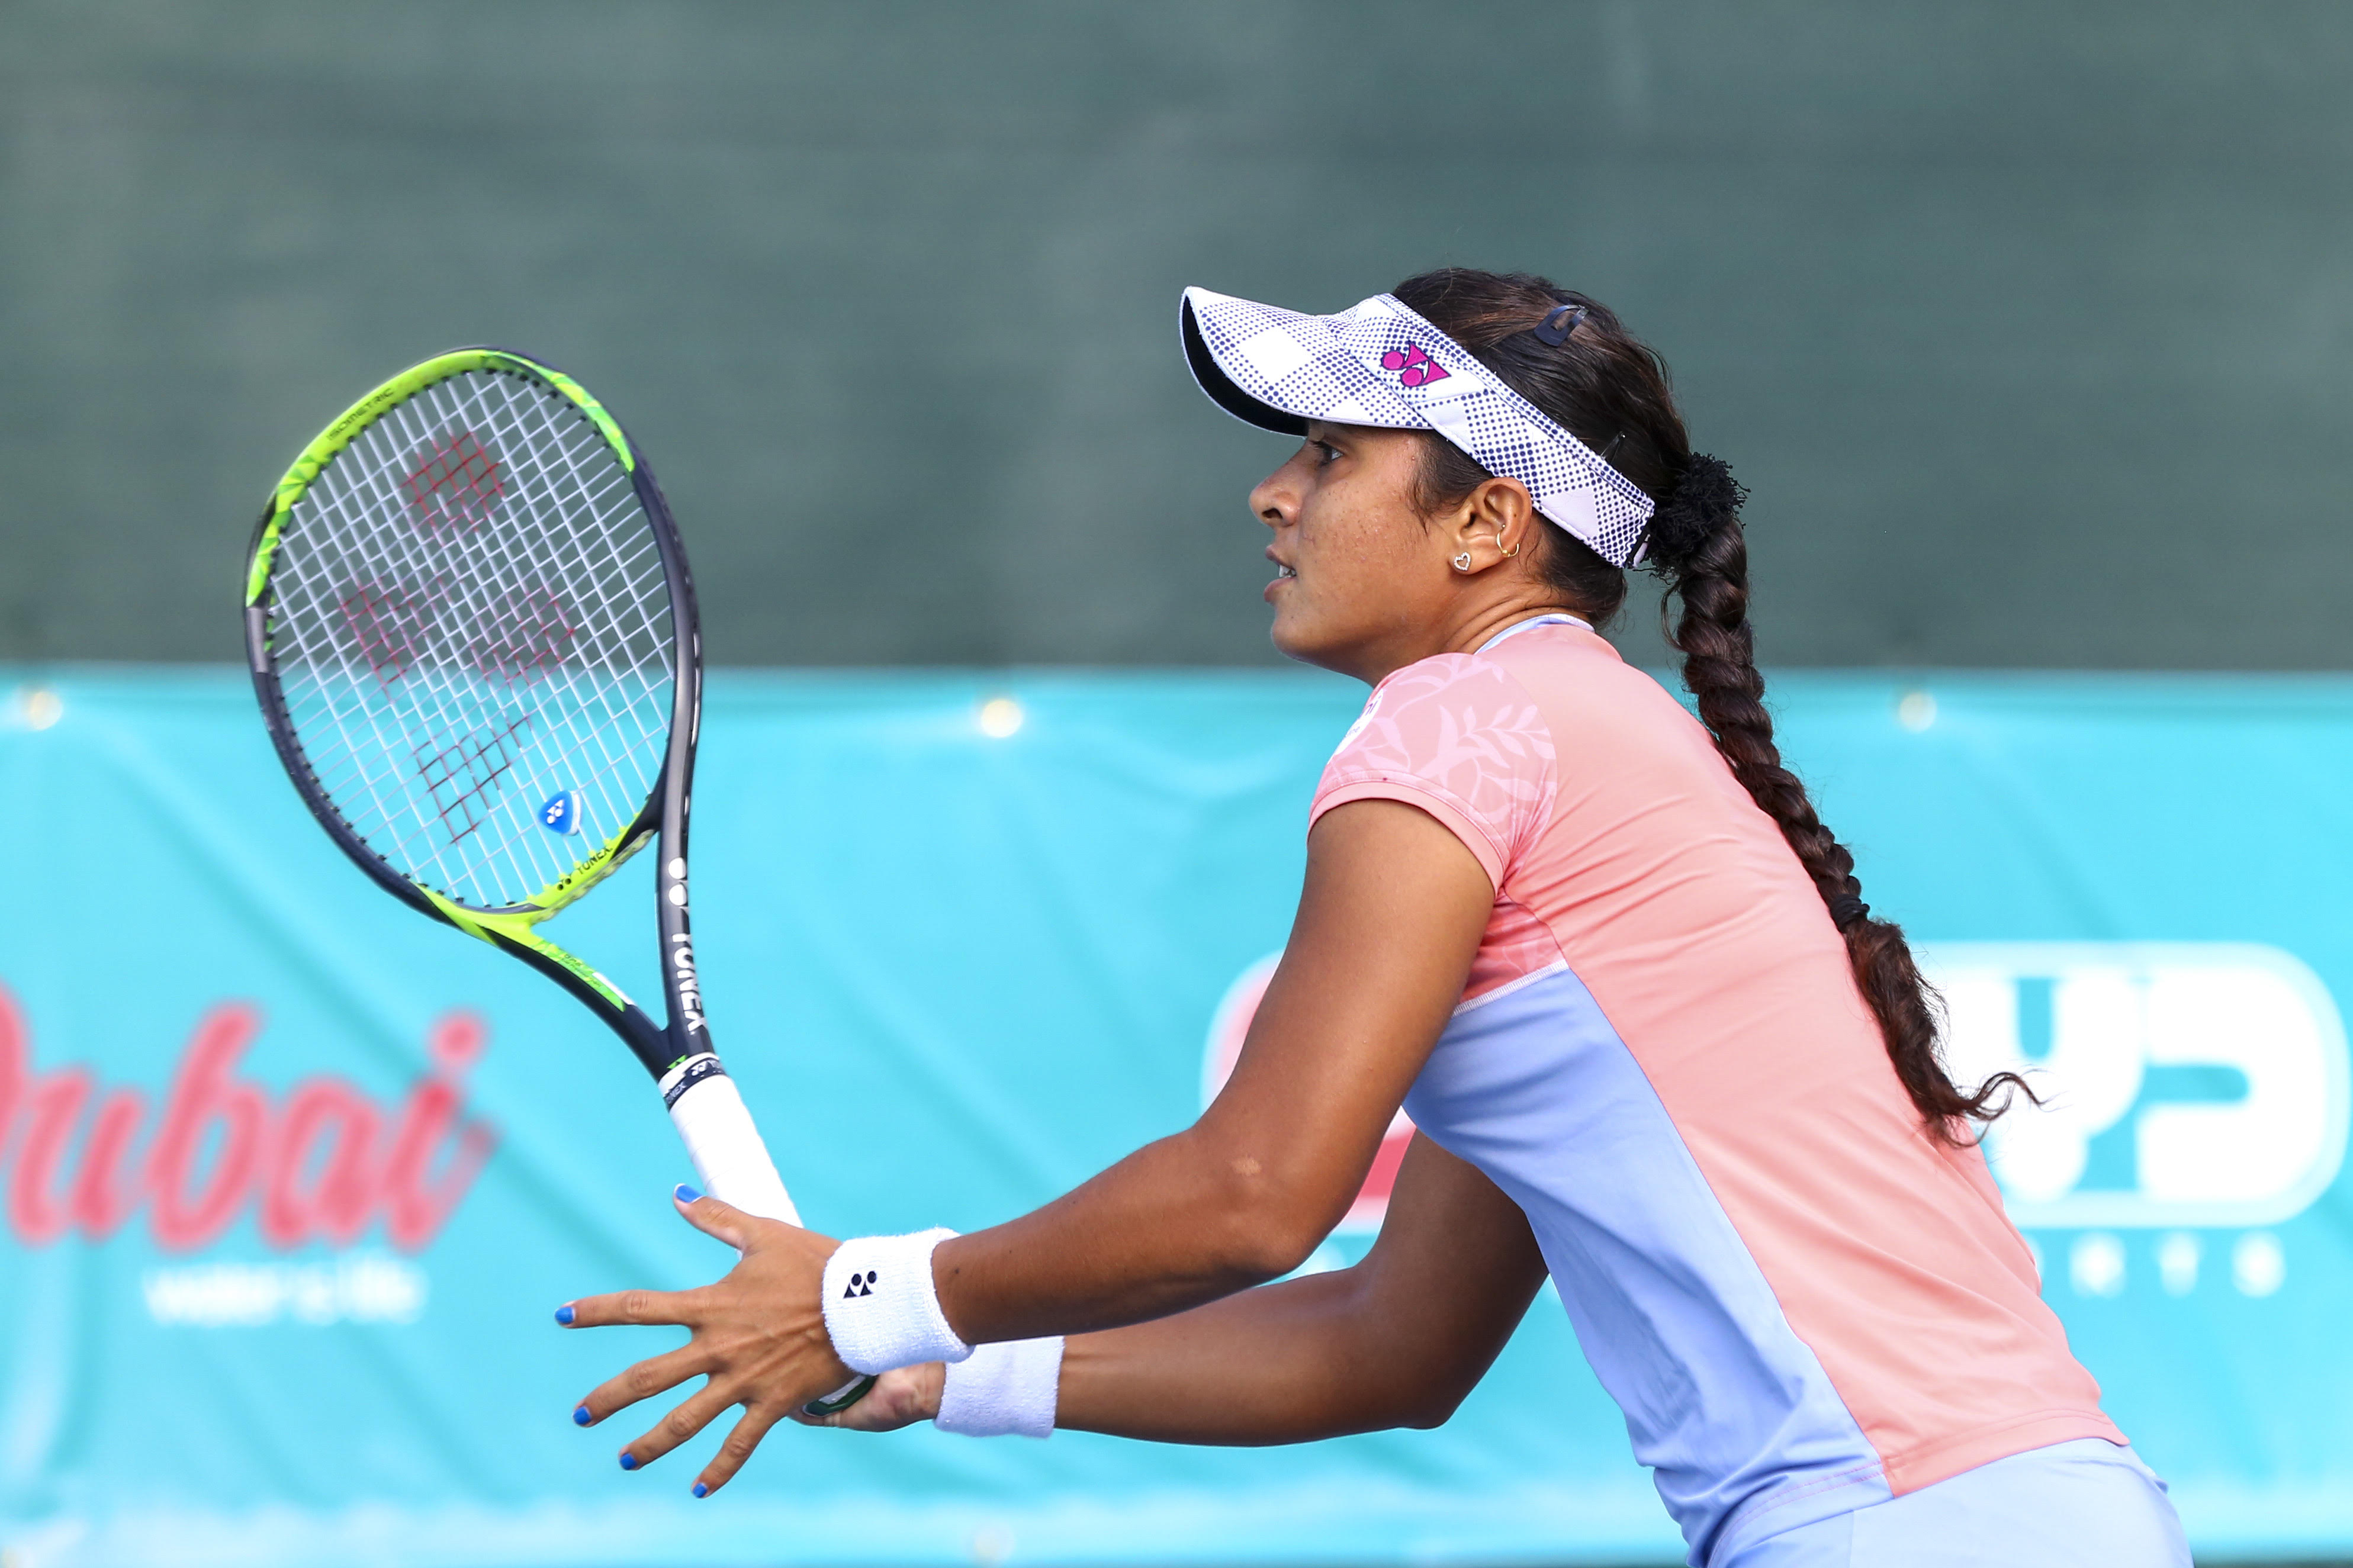 “I really enjoy playing in Dubai” – Ankita Raina, after her loss in 3 sets to #64 Siniakova in Dubai